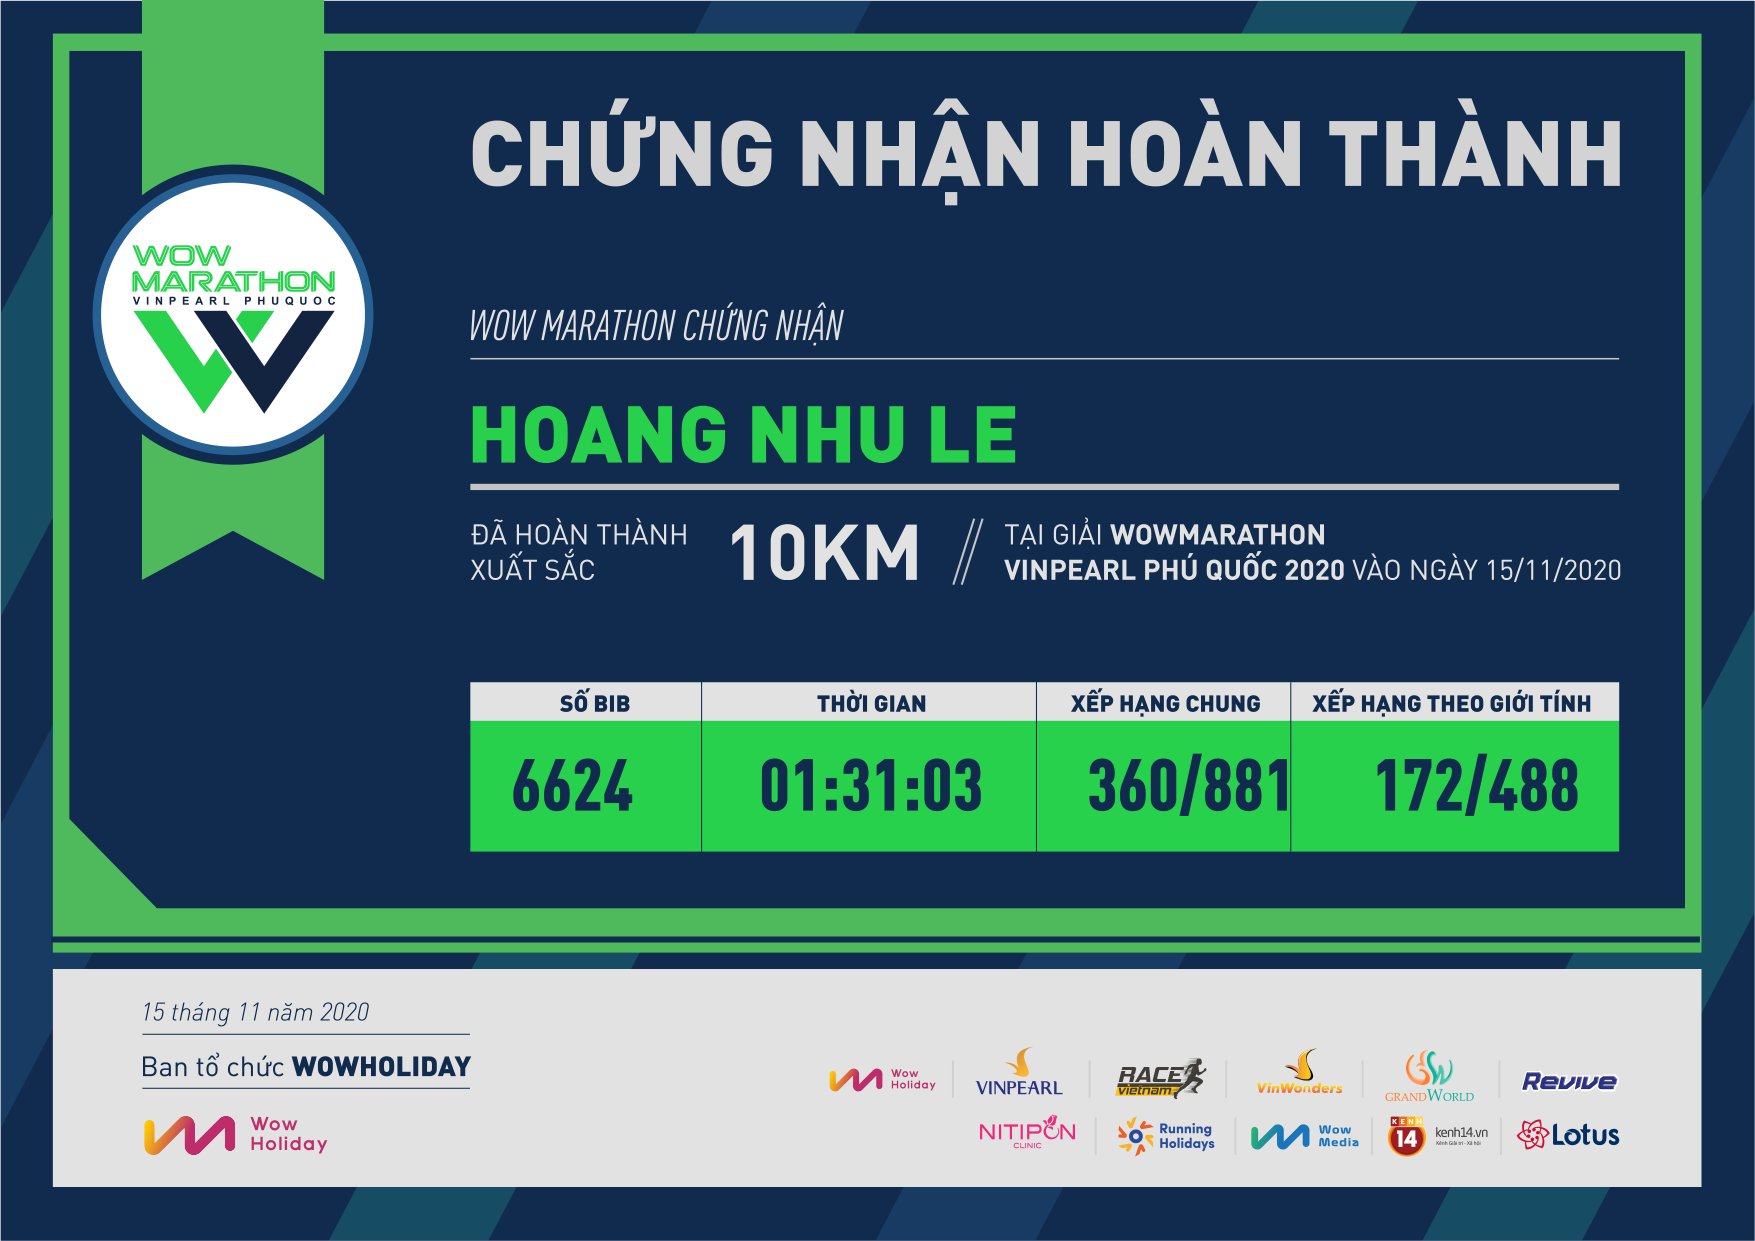 6624 - Hoang Nhu Le